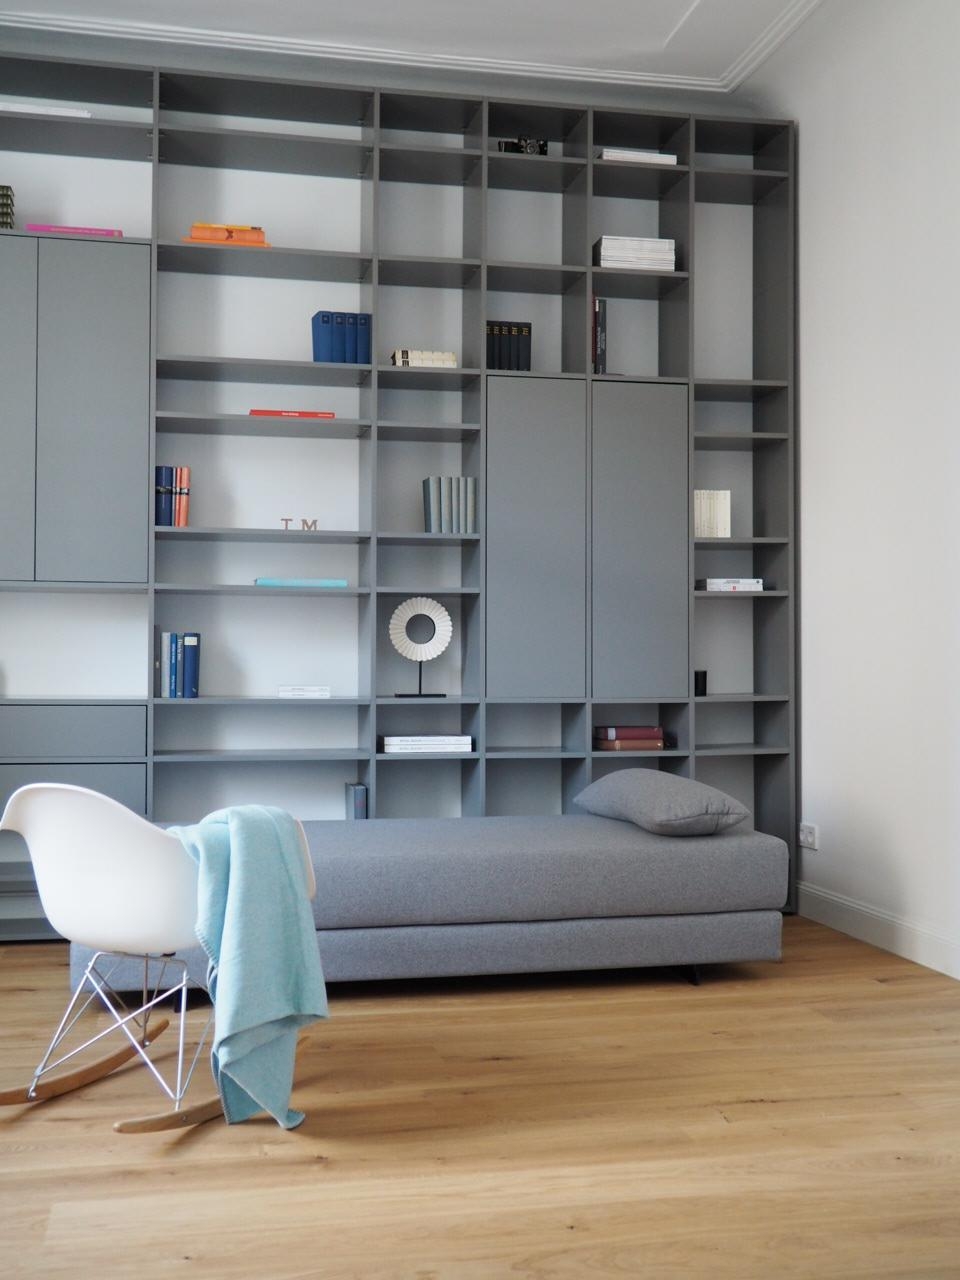 Cozy Corner 📚
#bookwall #altbau #interior #Wohnzimmer #Gästezimmer #cozy 